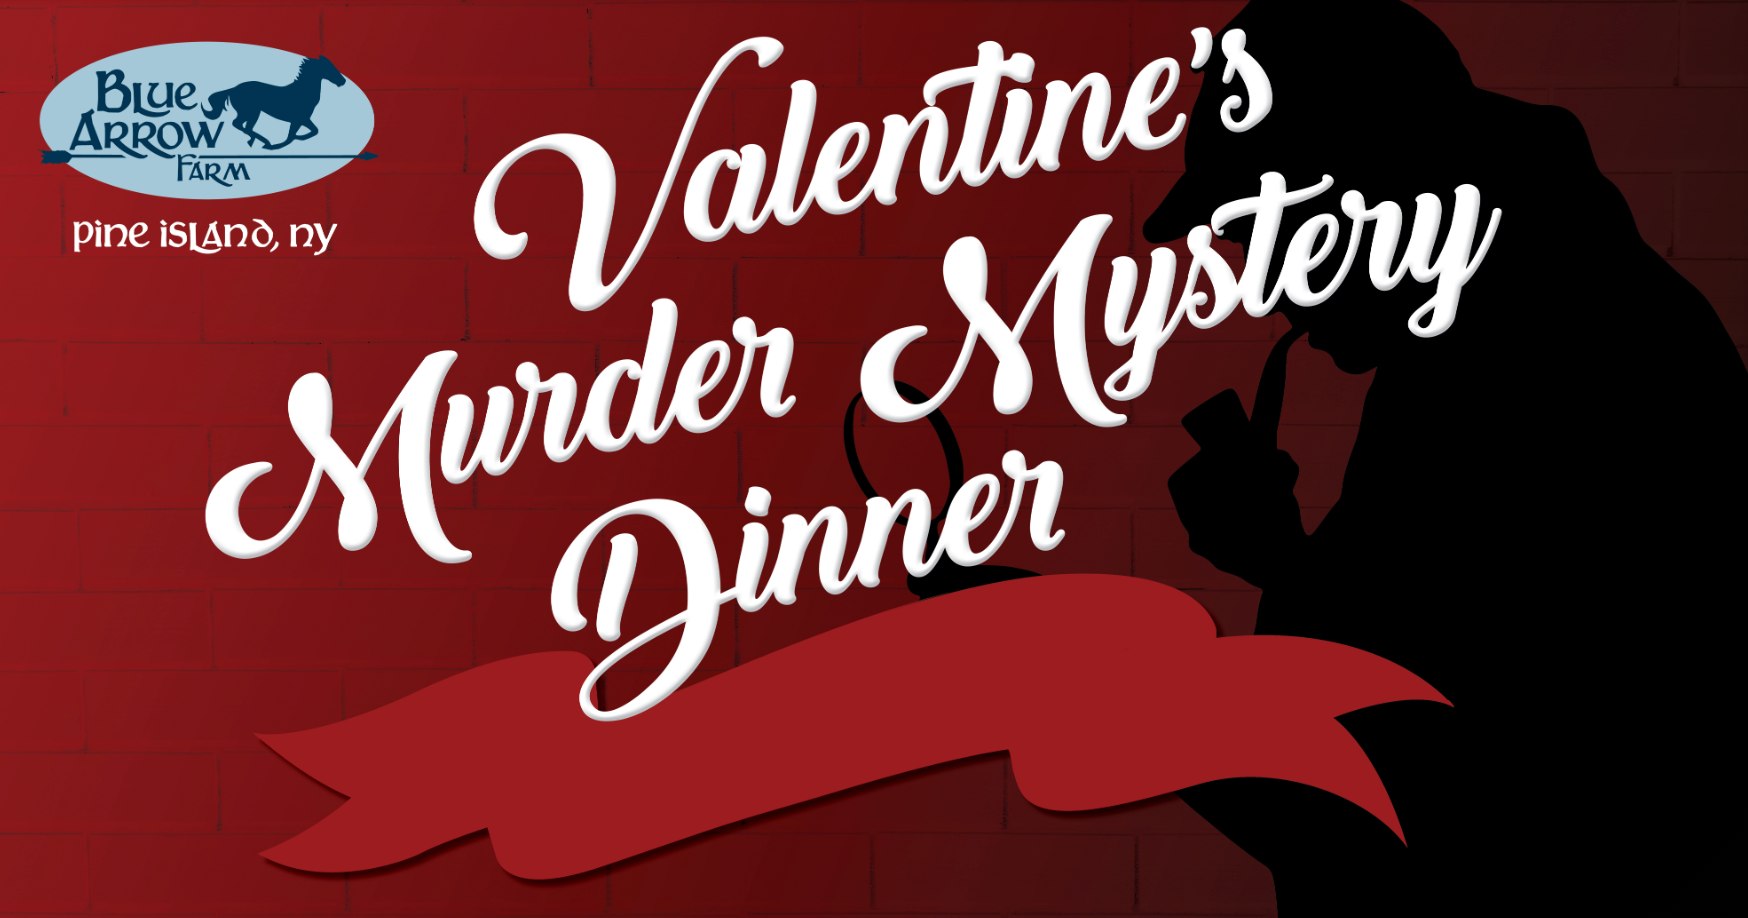 Valentine's Murder Mystery Dinner Show